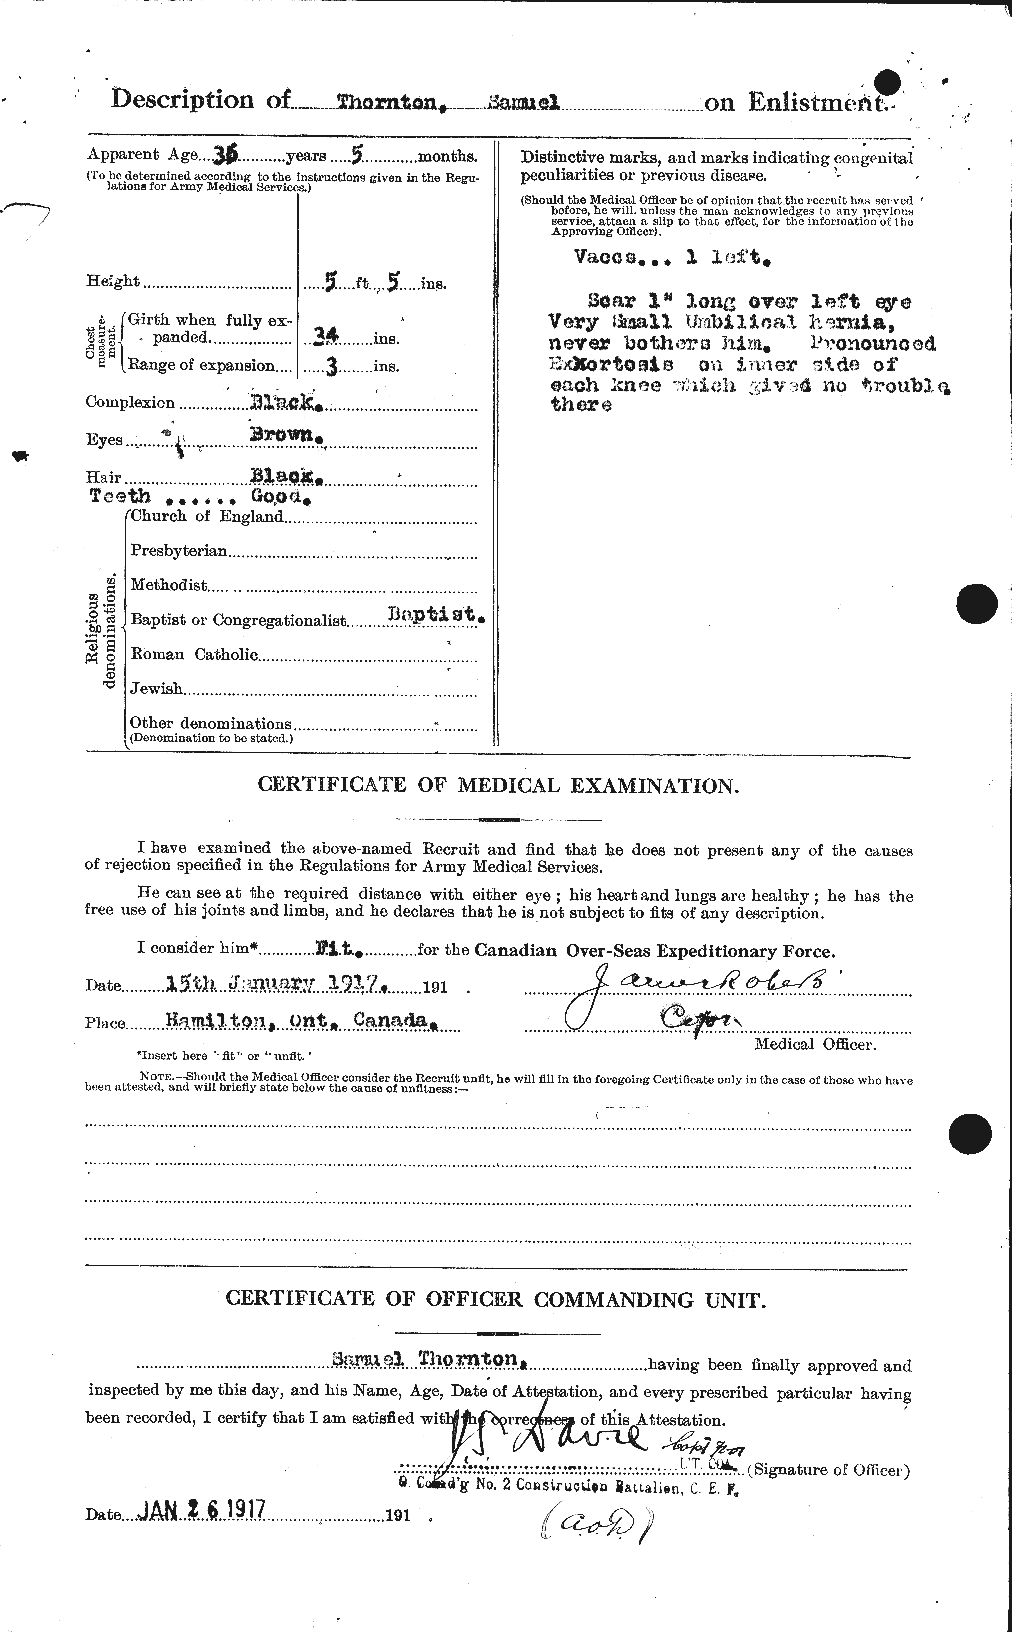 Dossiers du Personnel de la Première Guerre mondiale - CEC 636886b